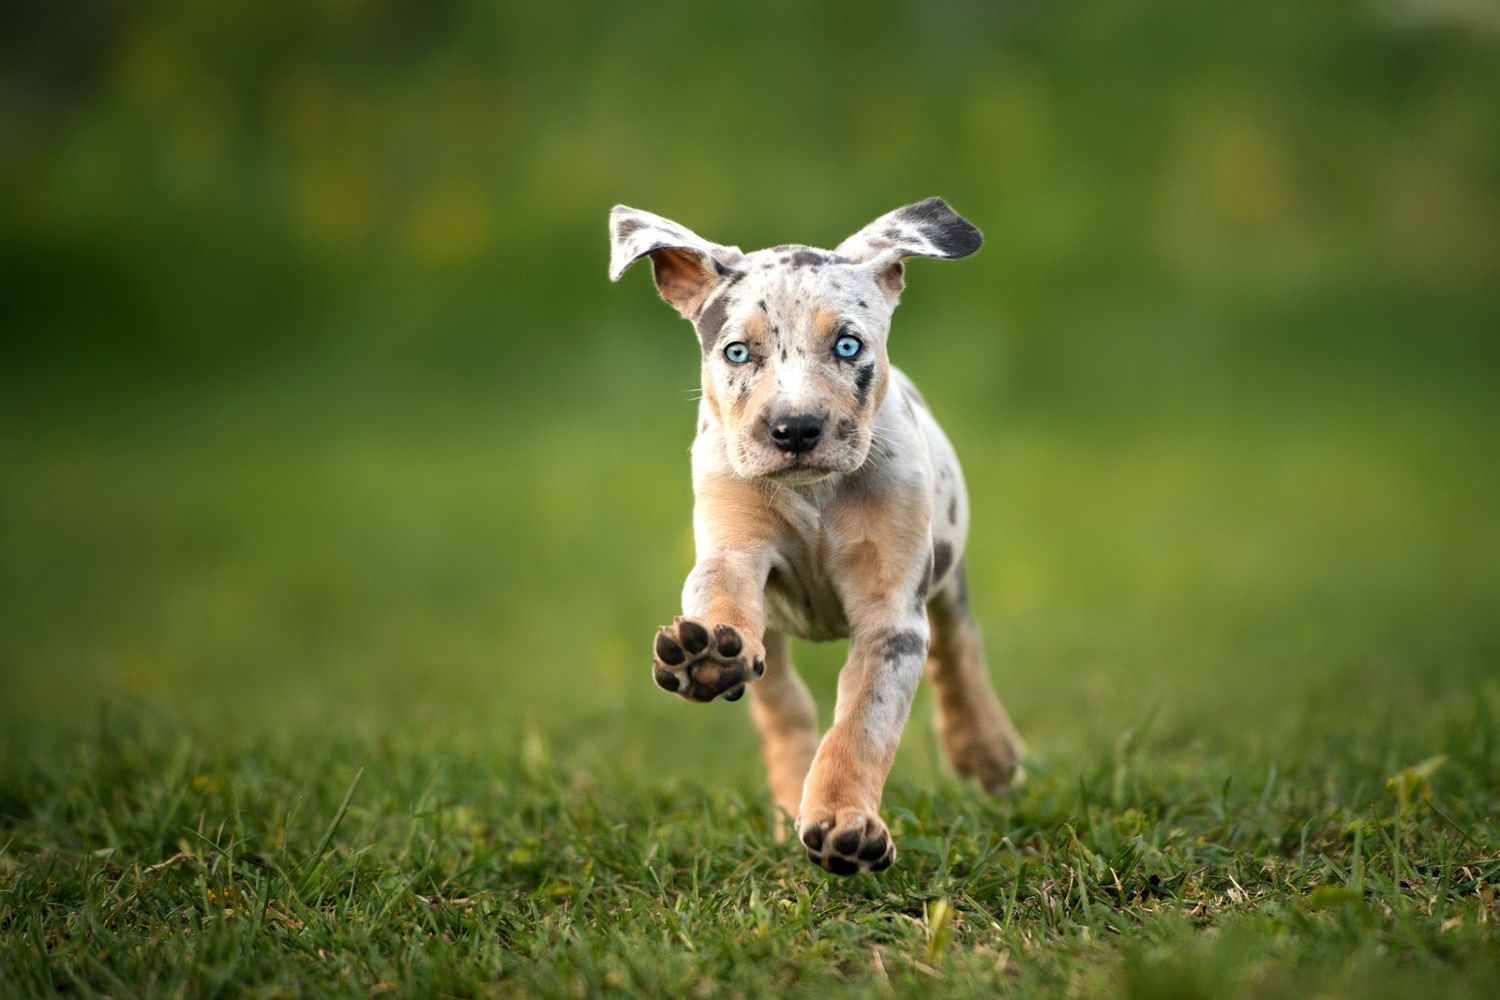 catahoula leopard dog puppy running